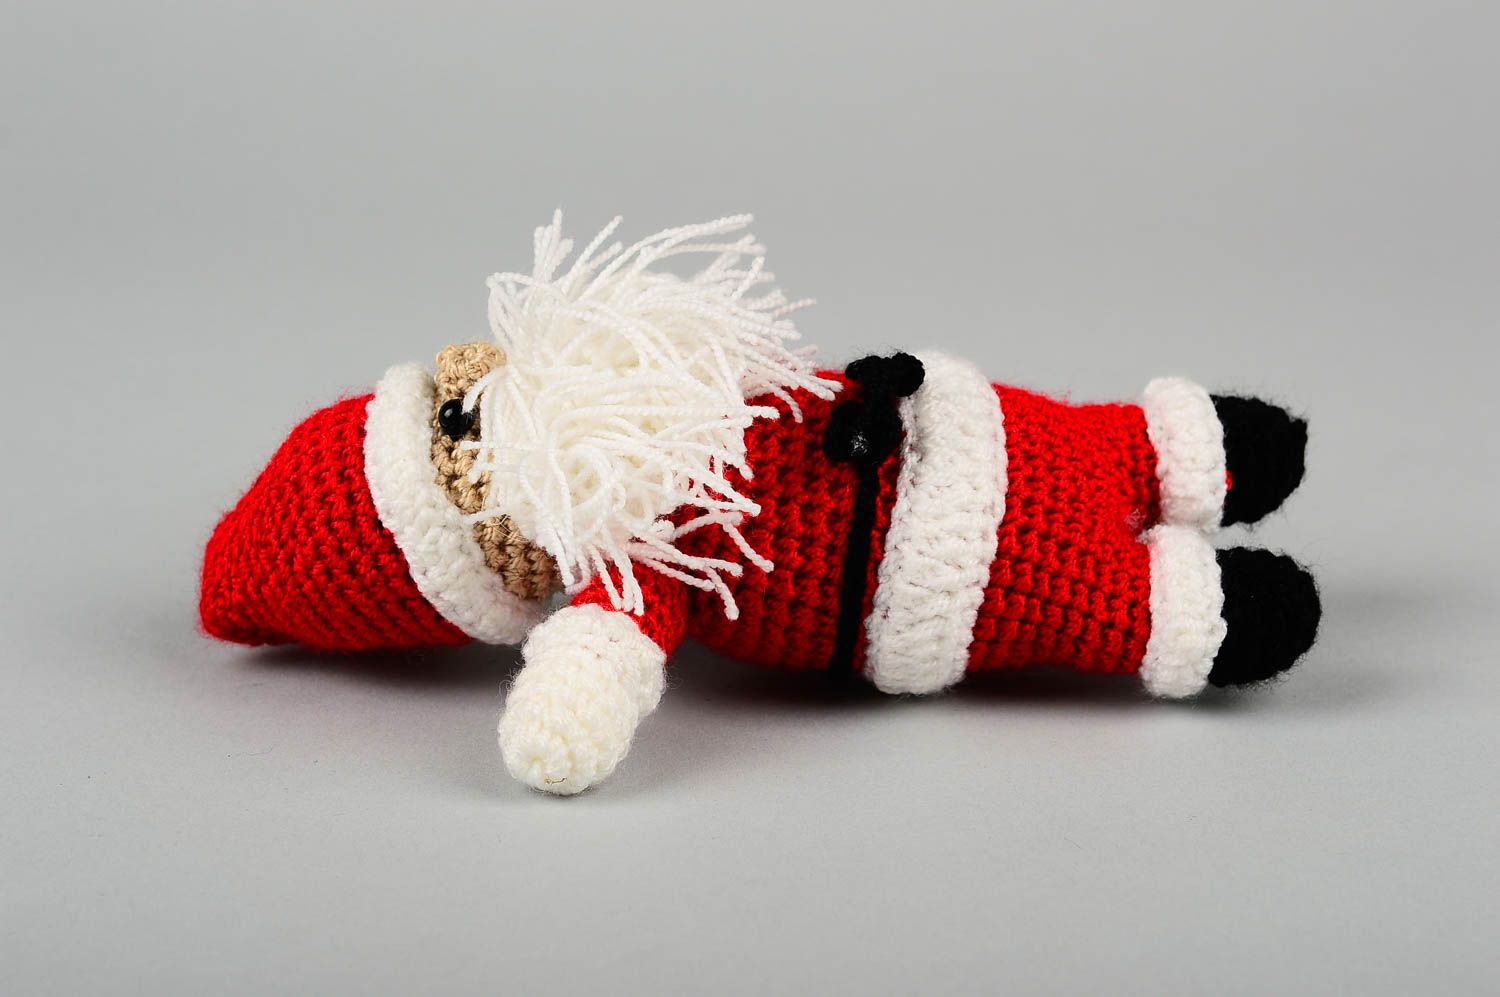 Мягкая игрушка ручной работы детская игрушка крючком красивая игрушка Дед Мороз фото 3